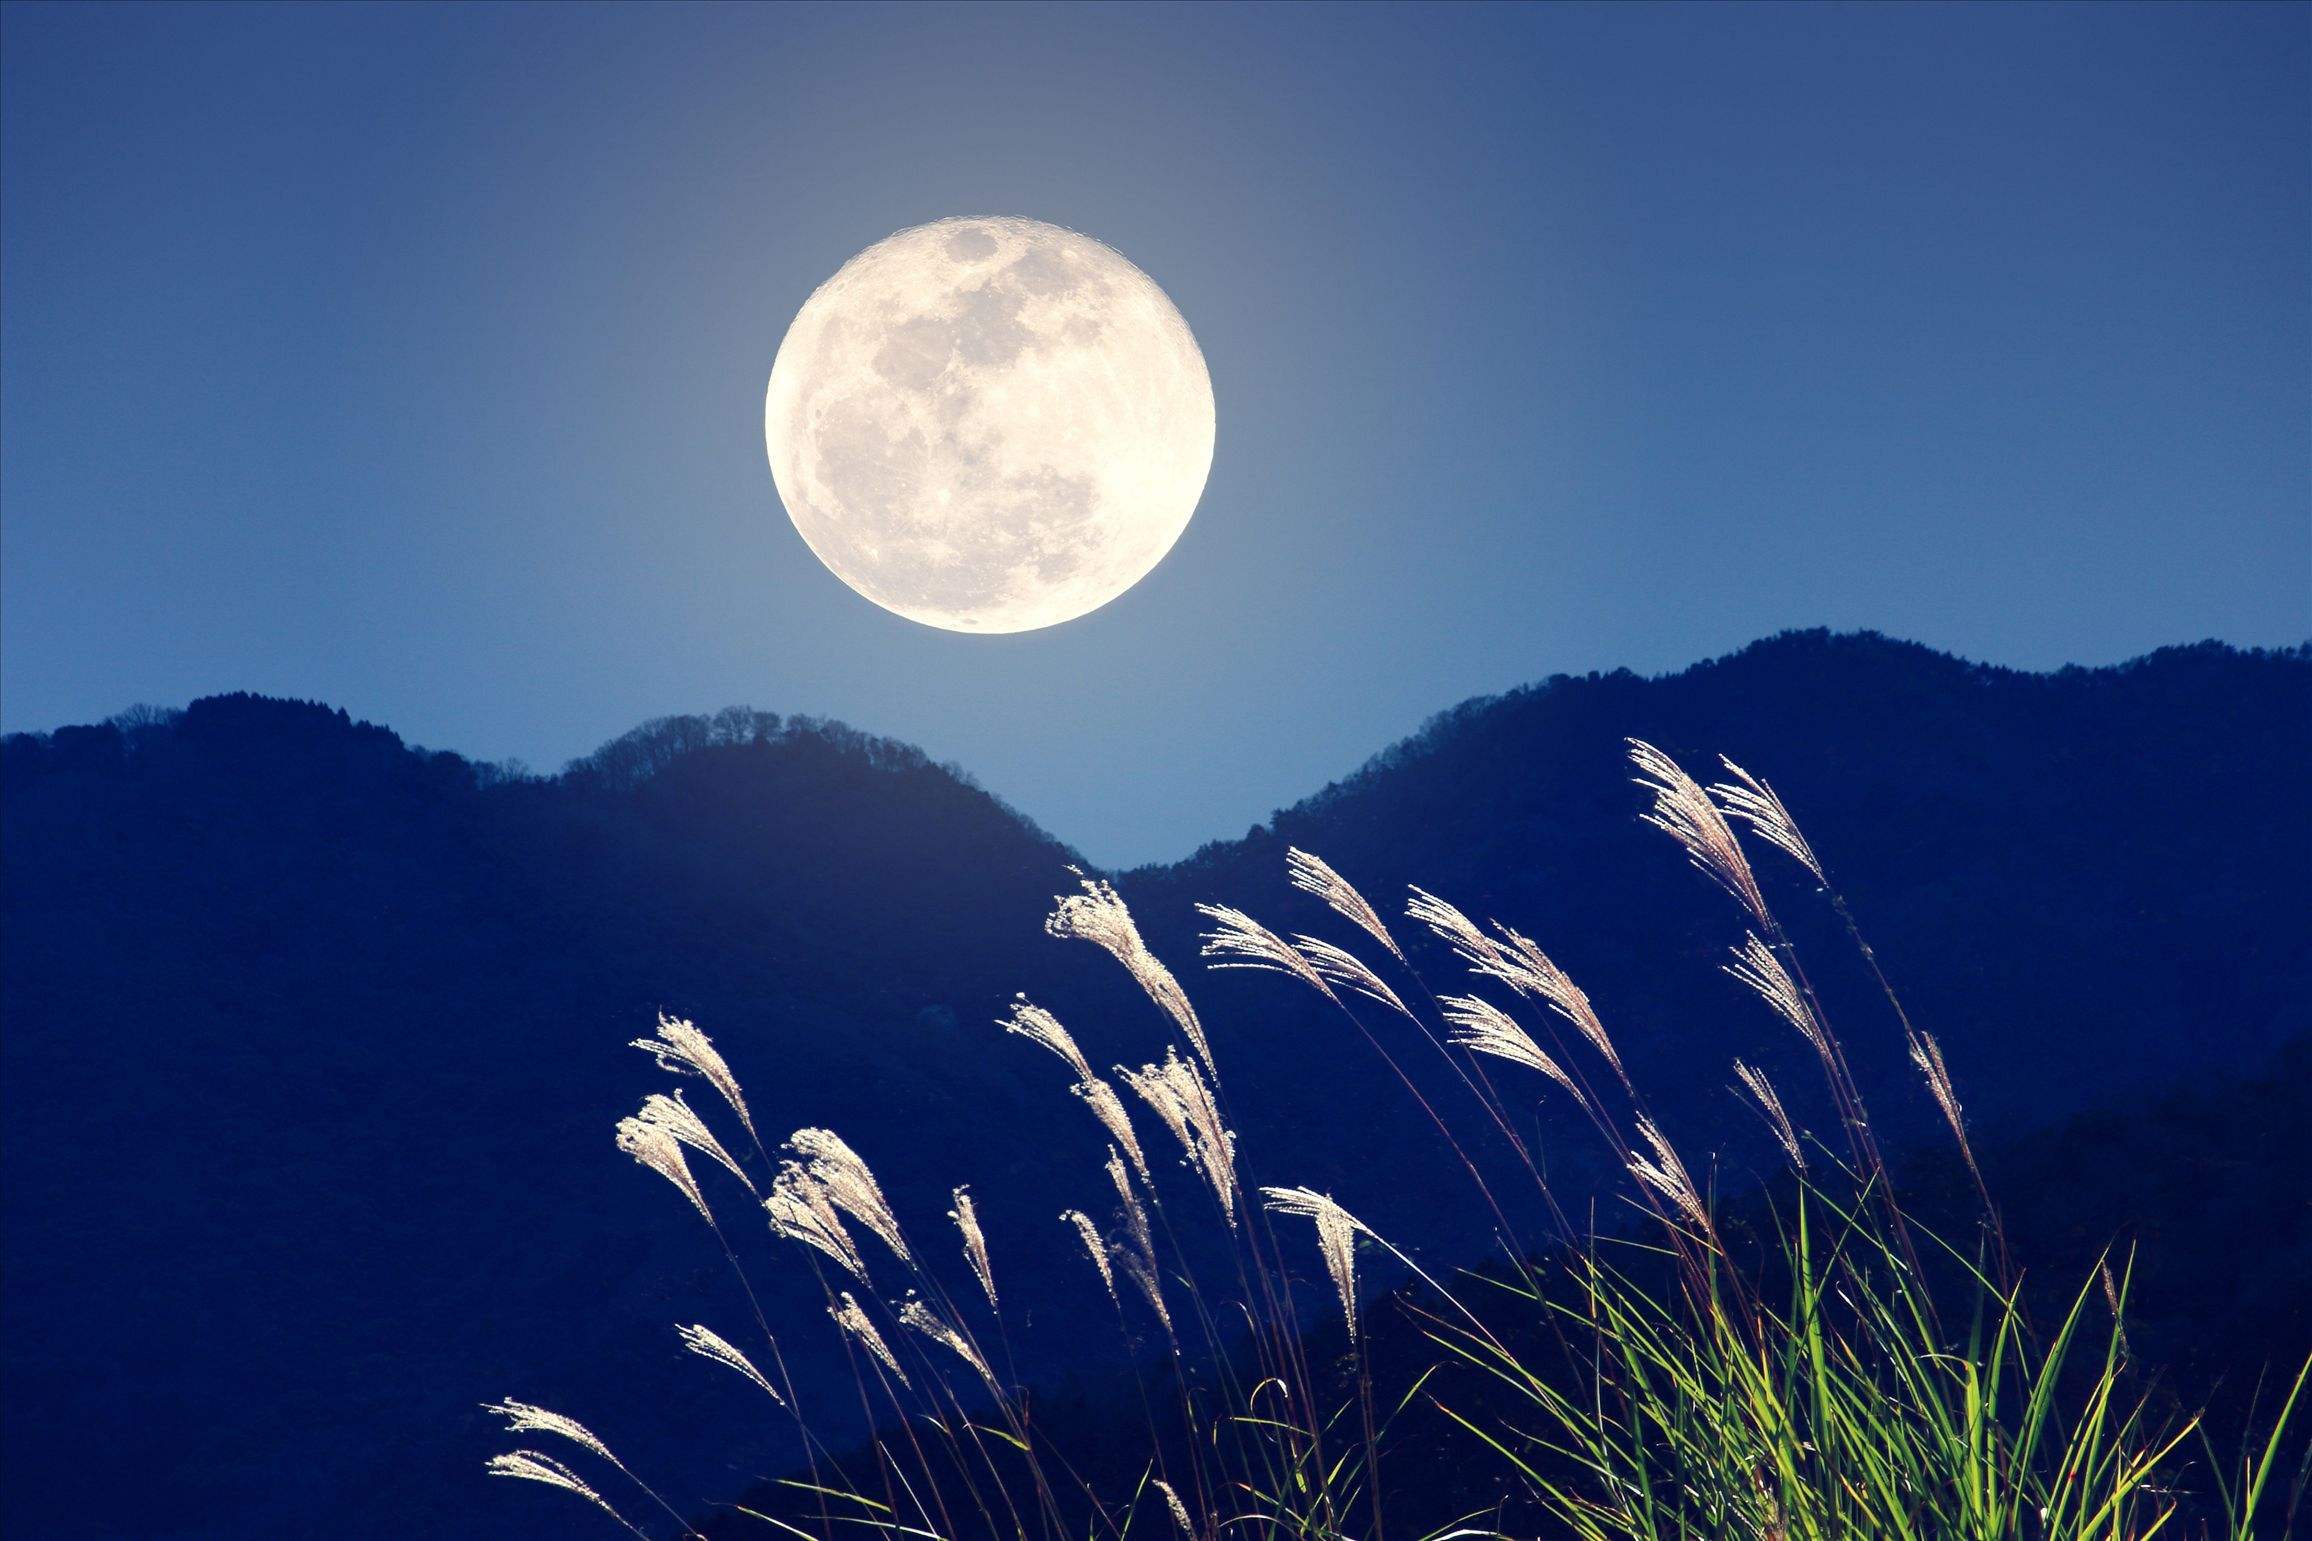 中秋圆月挂在天空中 皎洁月光洒在地上 像轻纱一样温柔